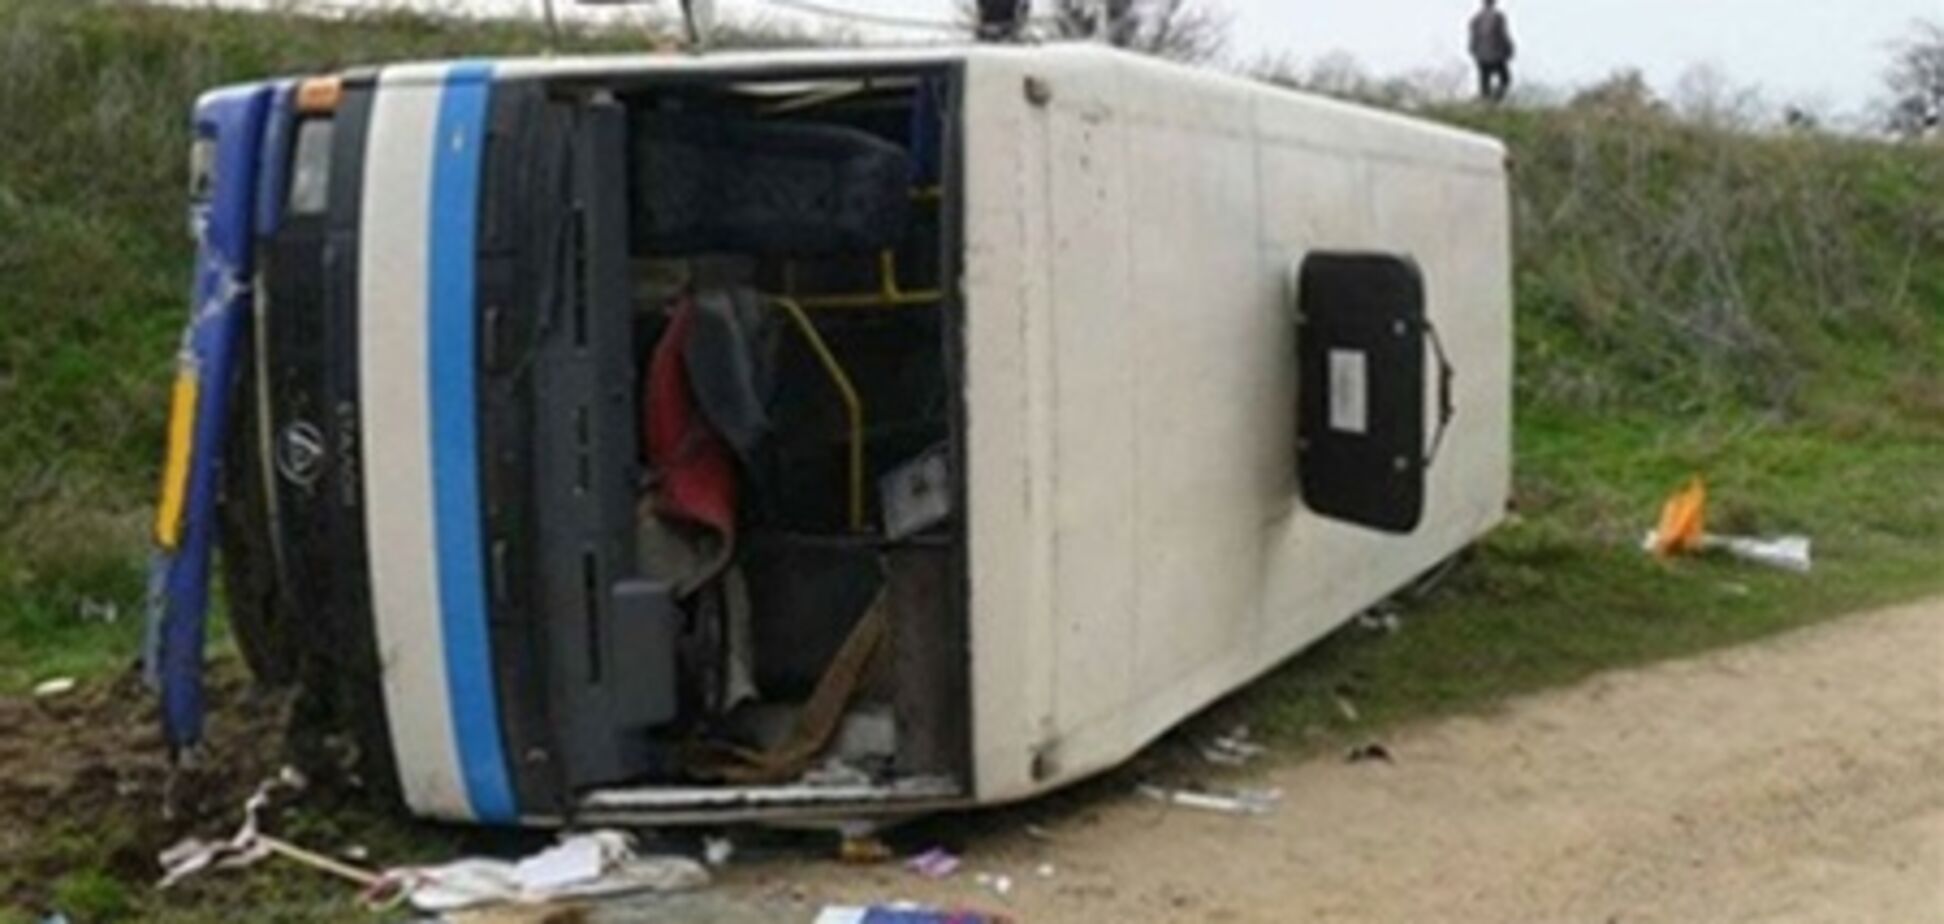 19 постраждалих в аварії в Румунії скоро відправлять в Україну - МЗС